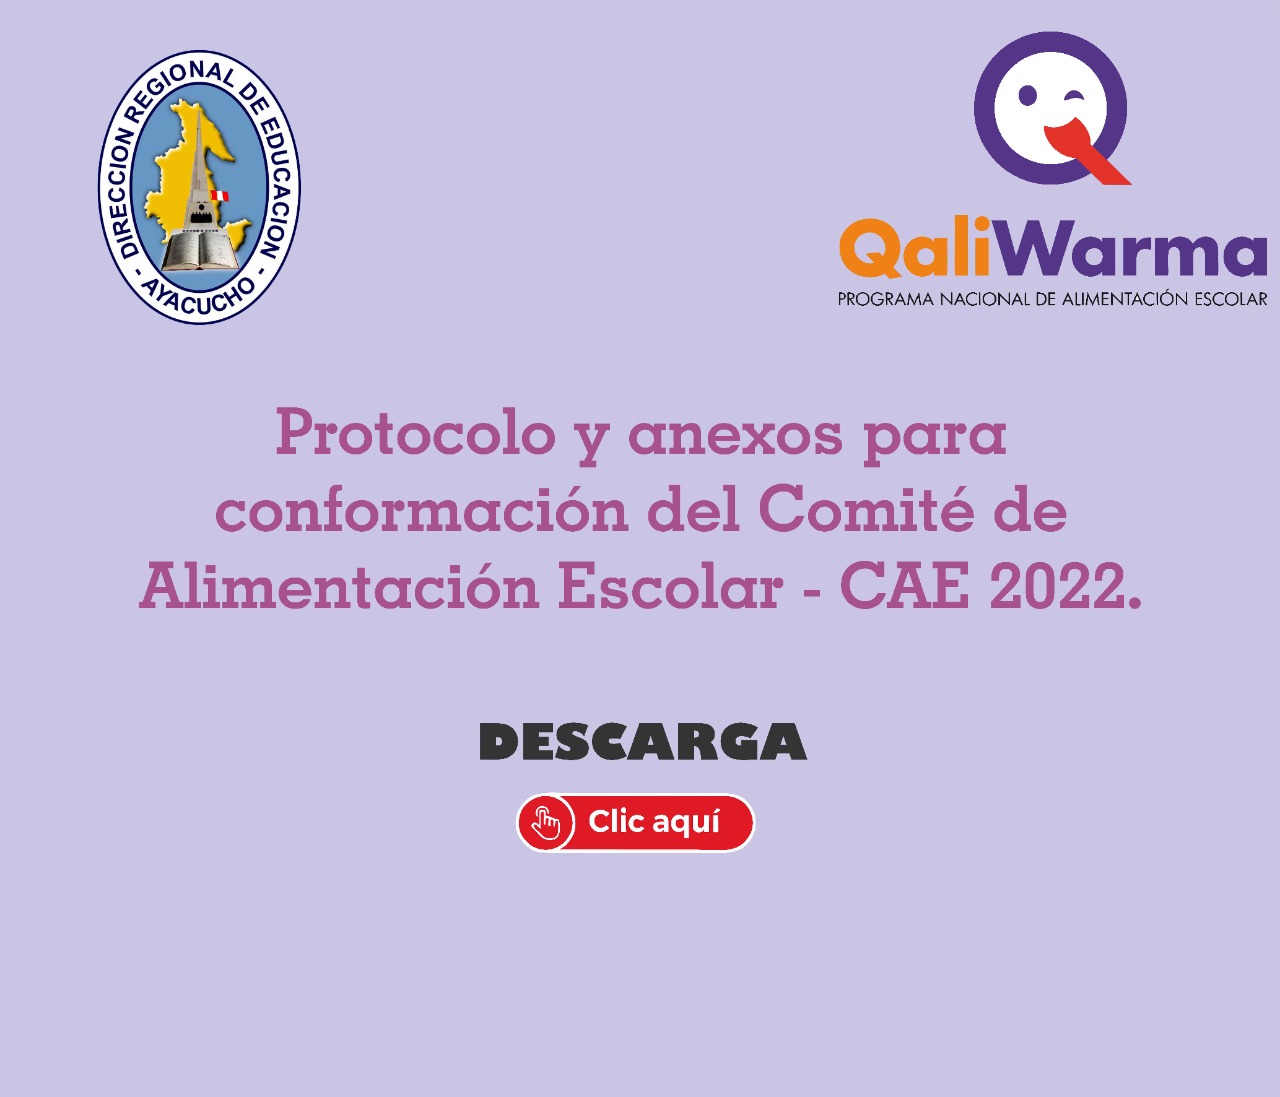 PROTOCOLO Y ANEXOS PARA CONFORMACIÓN DEL COMITÉ DE ALIMENTACIÓN ESCOLAR CAE - 2022.